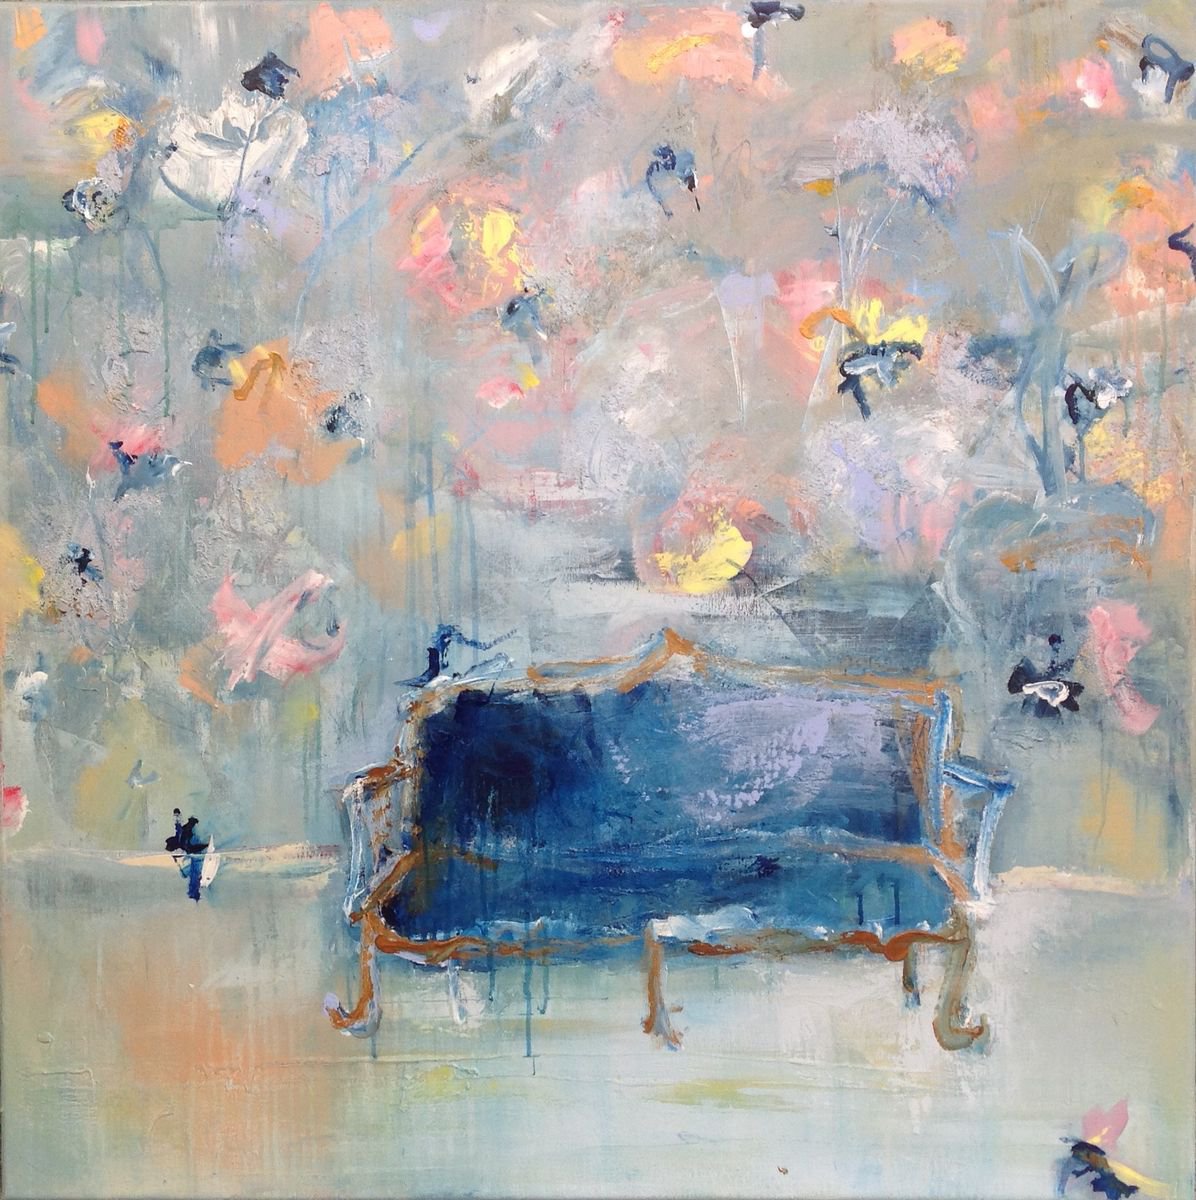 The Blue Sofa by Hennie Van de Lande